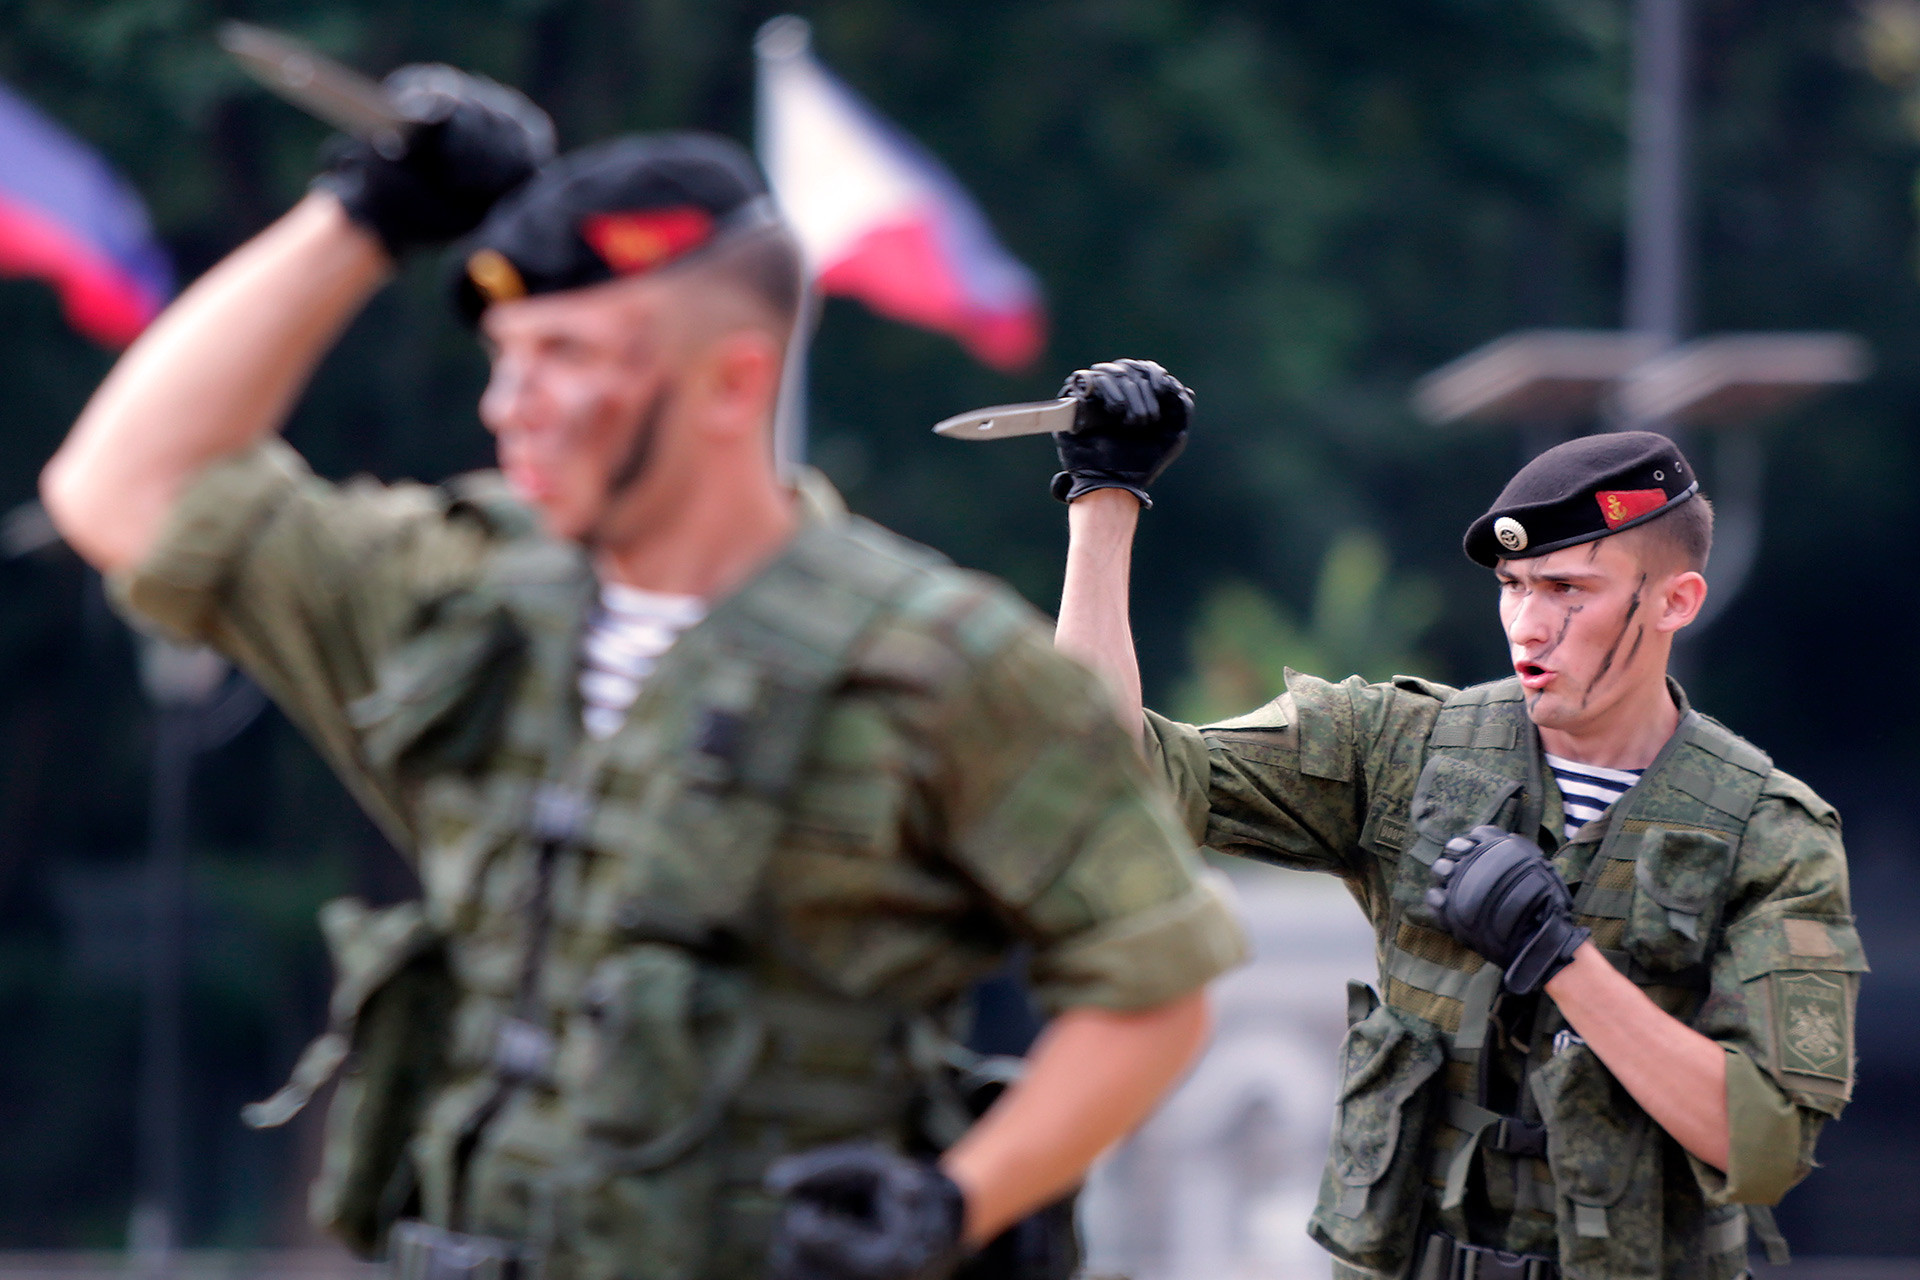 Kenapa Korps Marinir Adalah Pasukan Terbaik di Rusia? - Russia Beyond